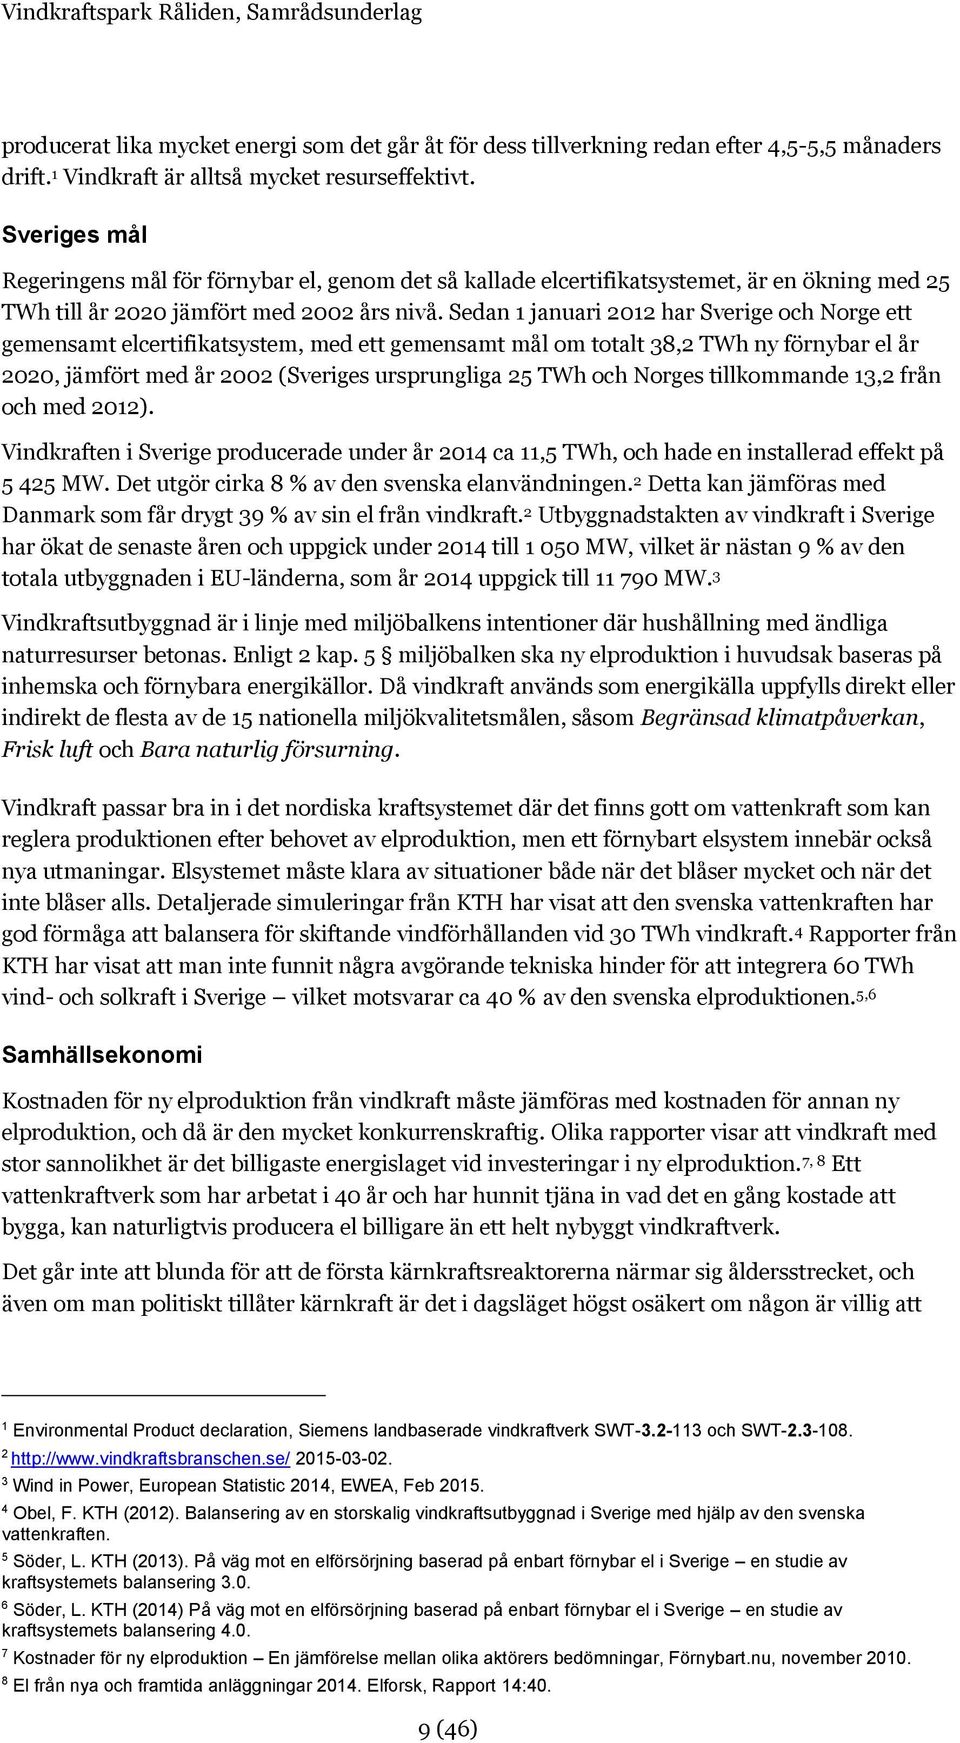 Sedan 1 januari 2012 har Sverige och Norge ett gemensamt elcertifikatsystem, med ett gemensamt mål om totalt 38,2 TWh ny förnybar el år 2020, jämfört med år 2002 (Sveriges ursprungliga 25 TWh och